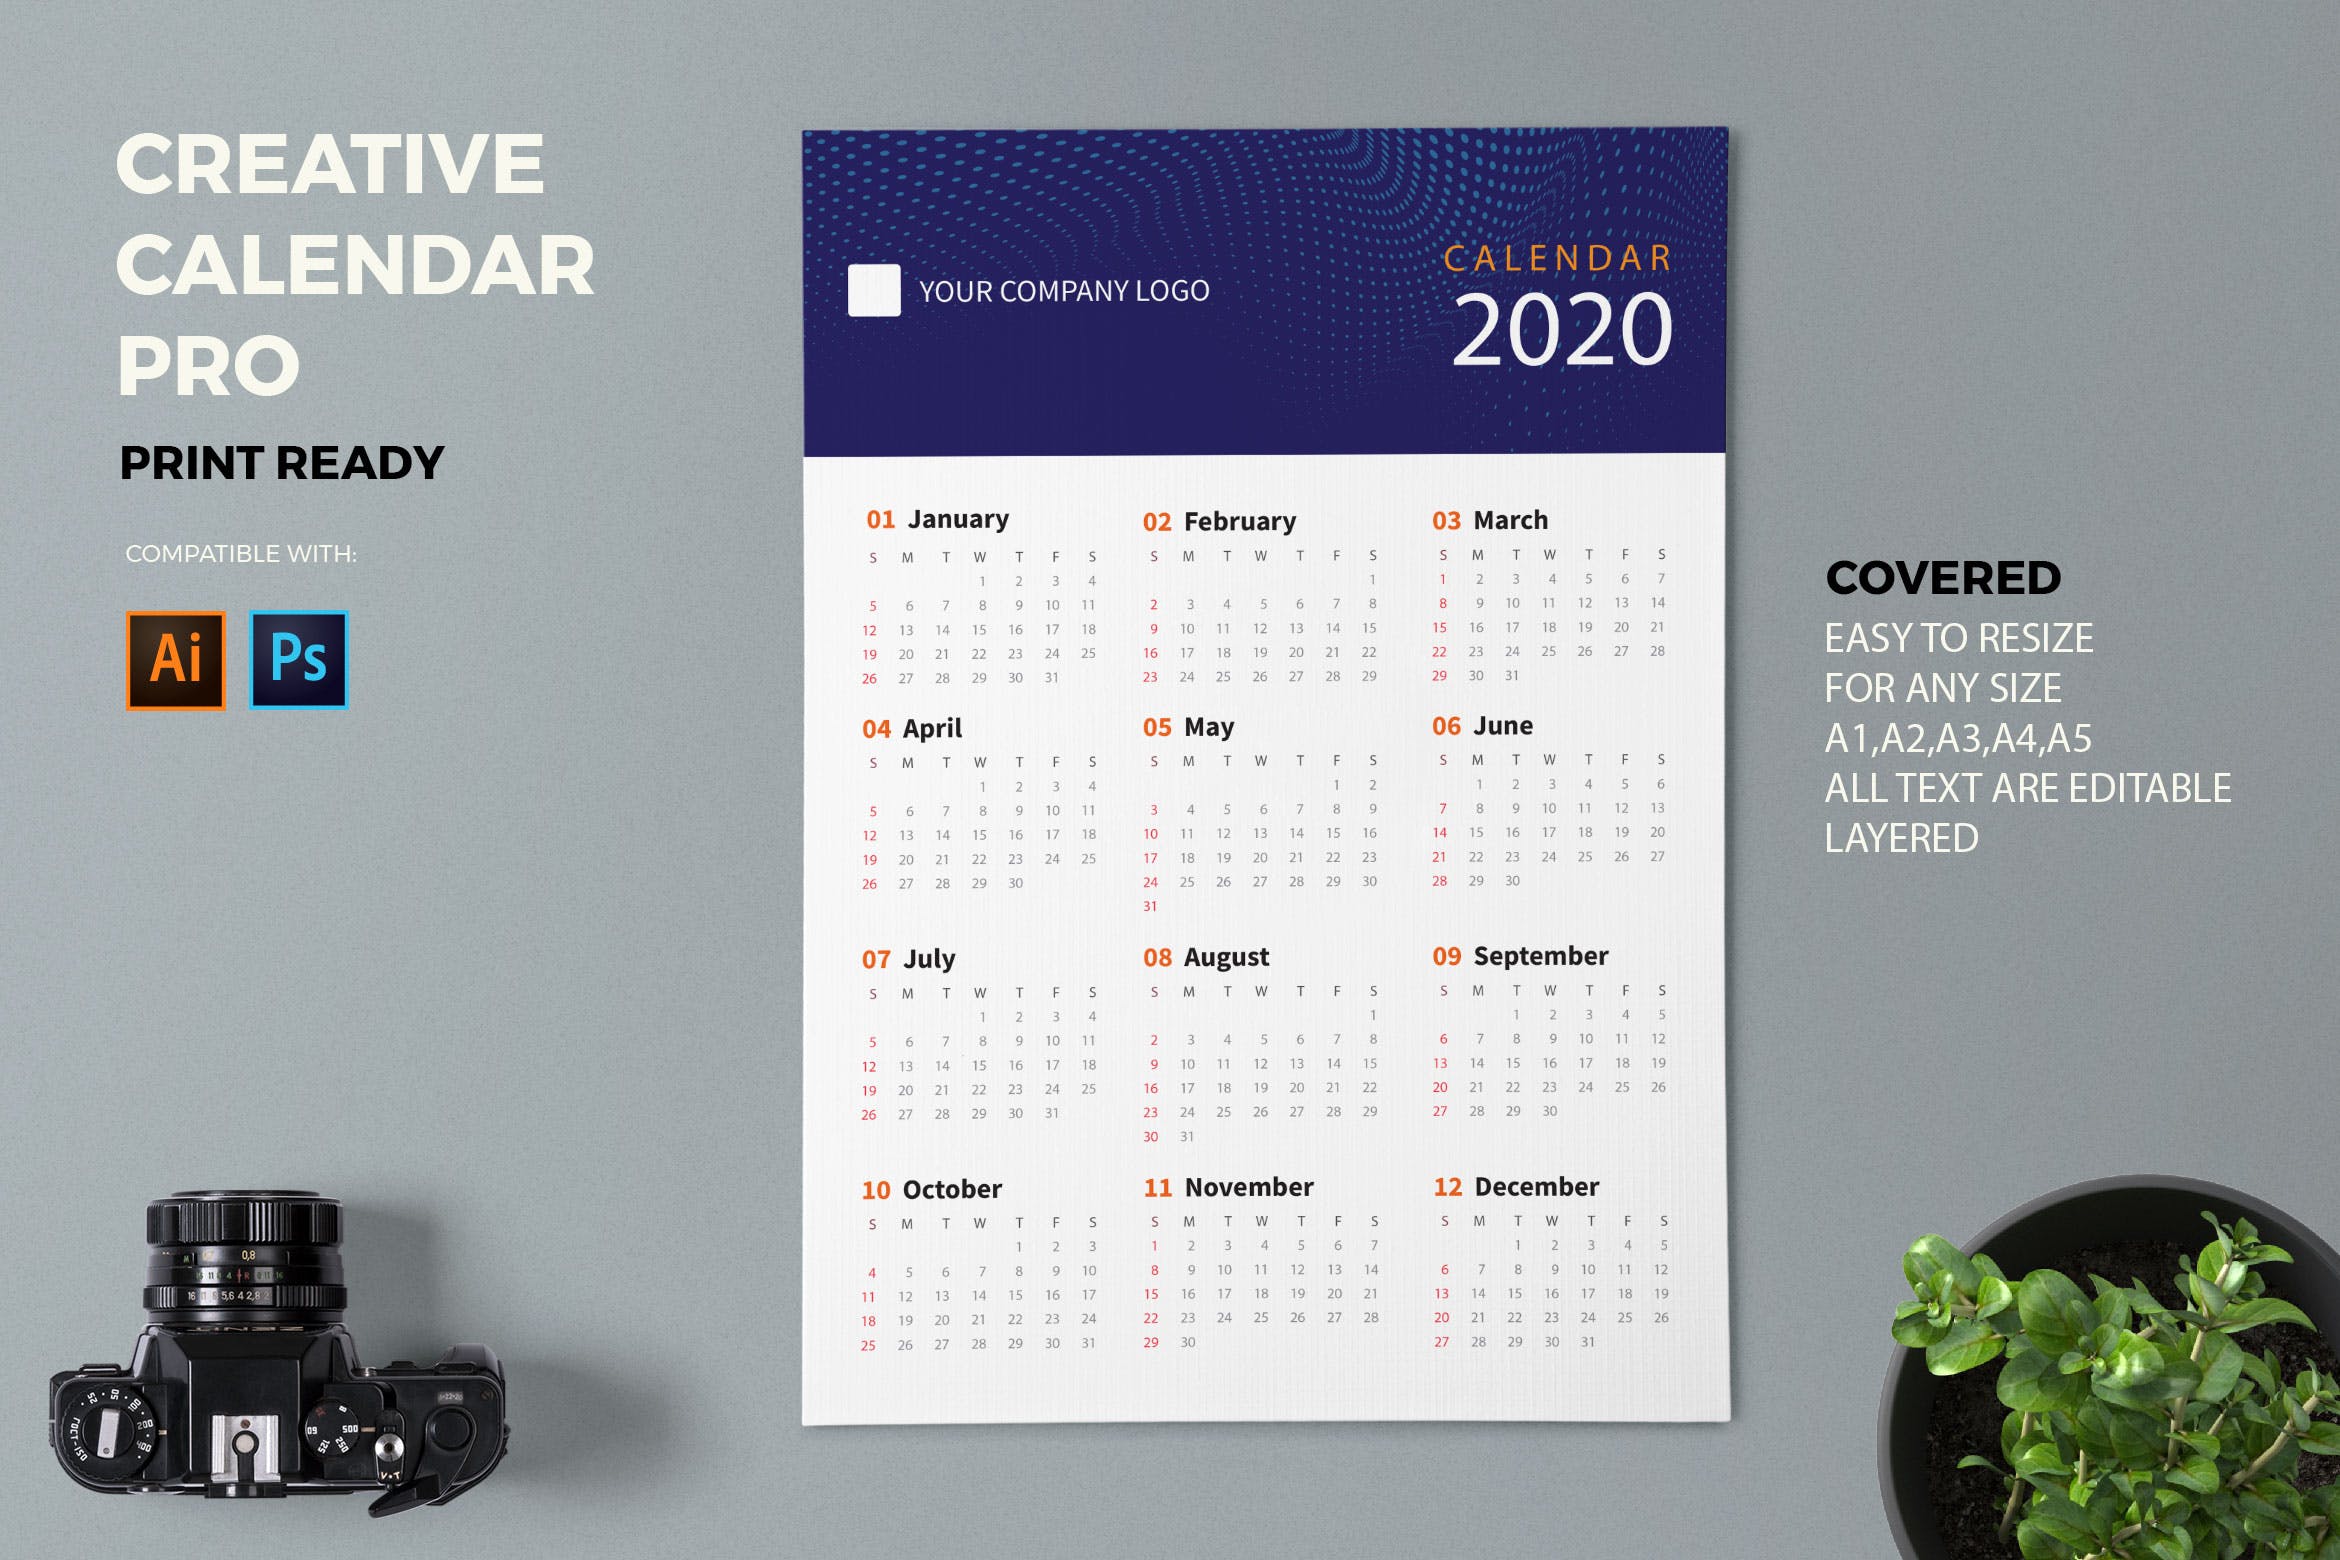 等距圆点波浪几何图形2020创意日历年历设计模板 Creative Calendar Pro 2020插图